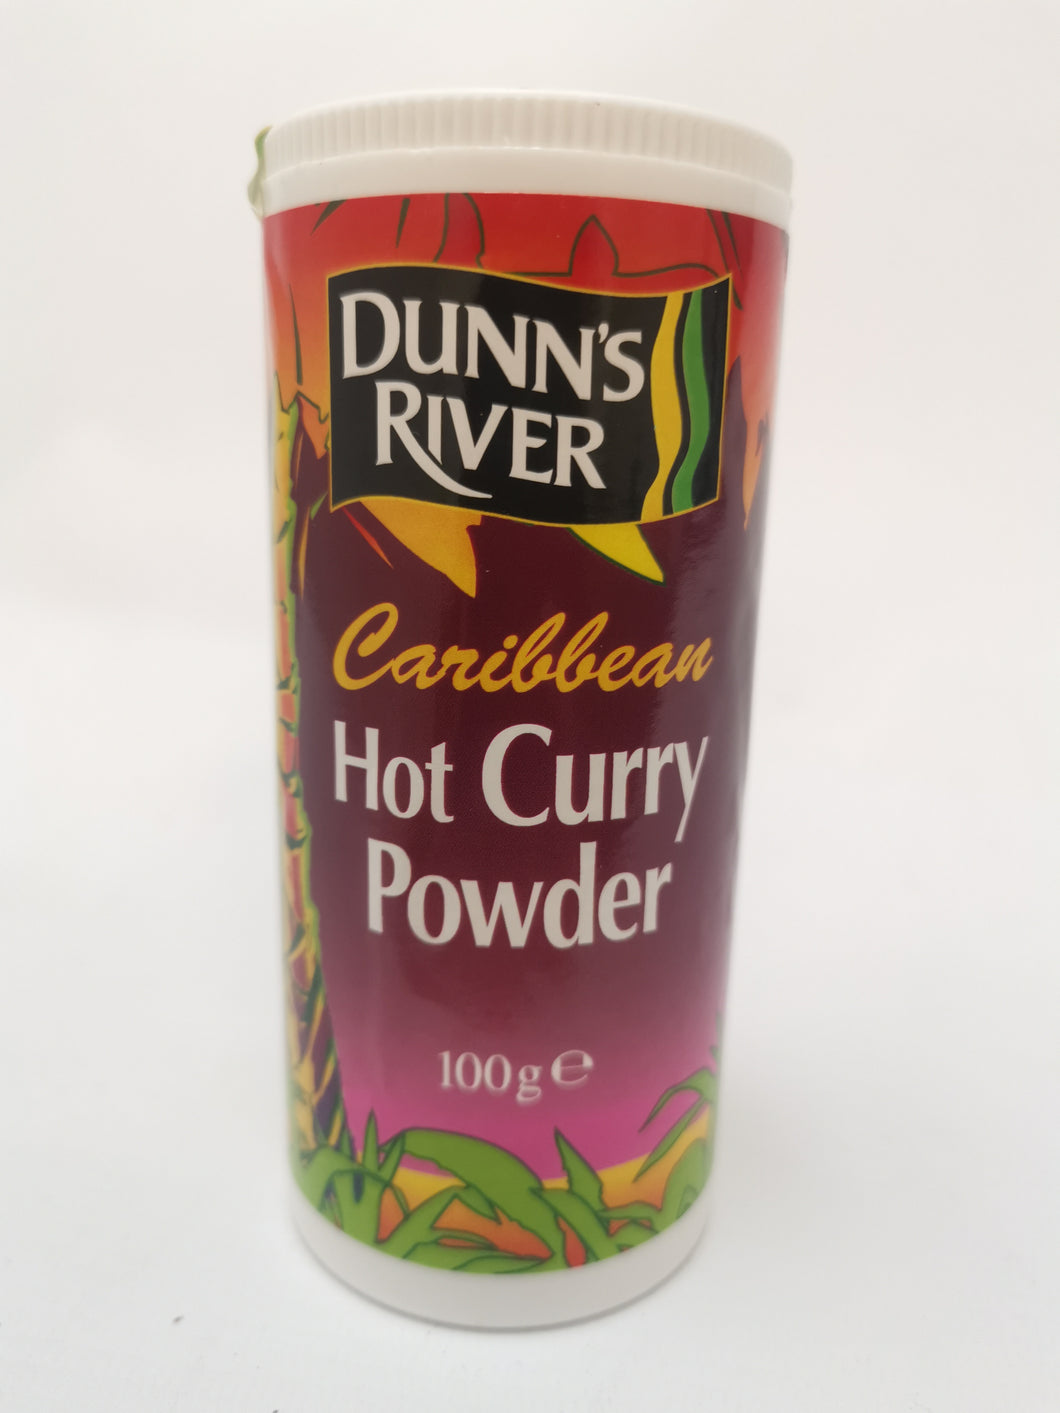 Dunn's River Caribbean Hot Curry Powder 100g